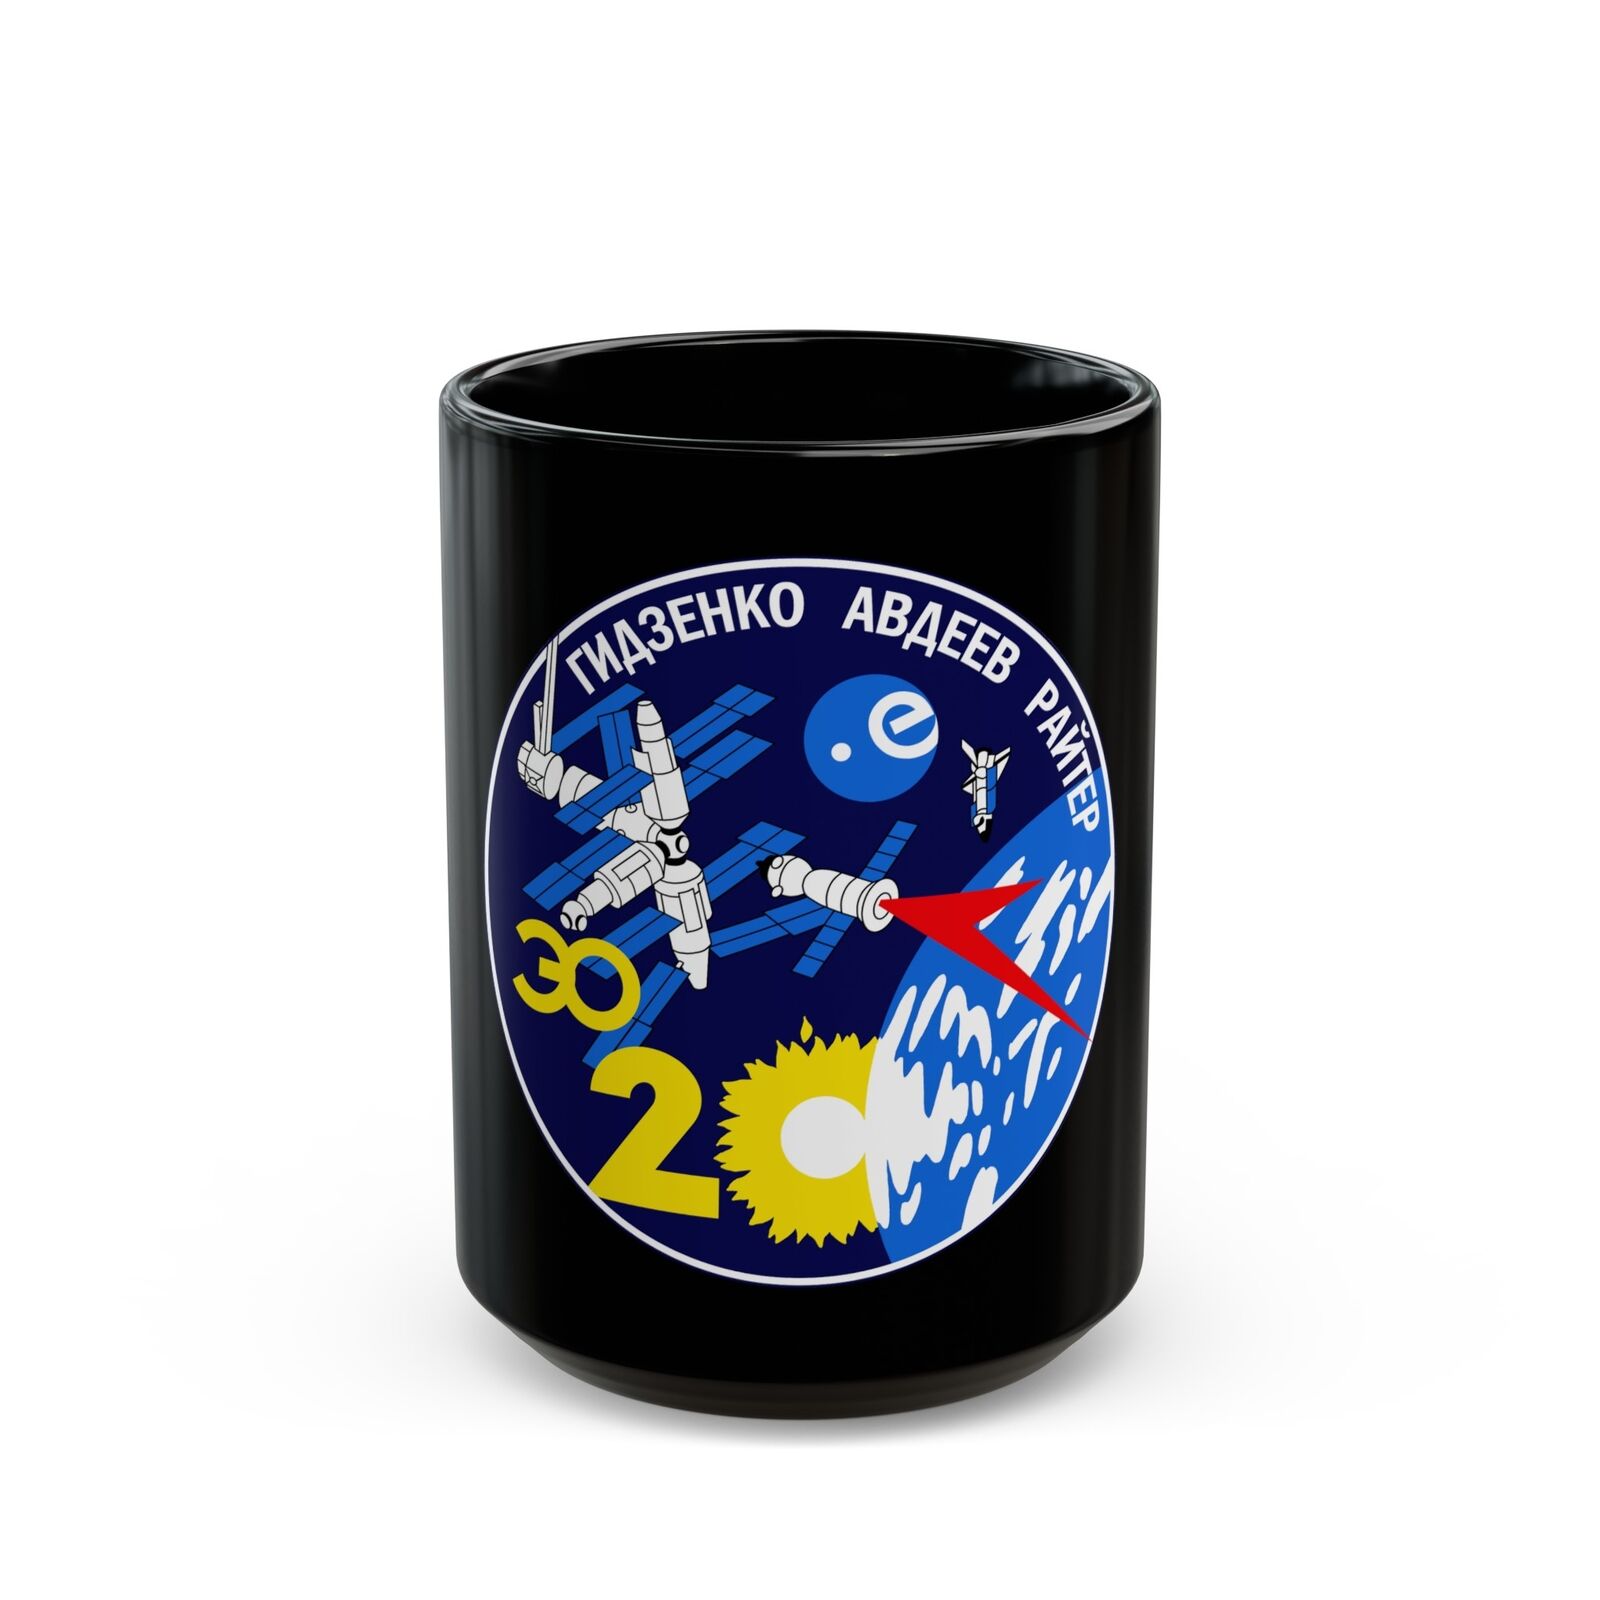 Soyuz TM-22 (Soyuz Programme) Black Coffee Mug